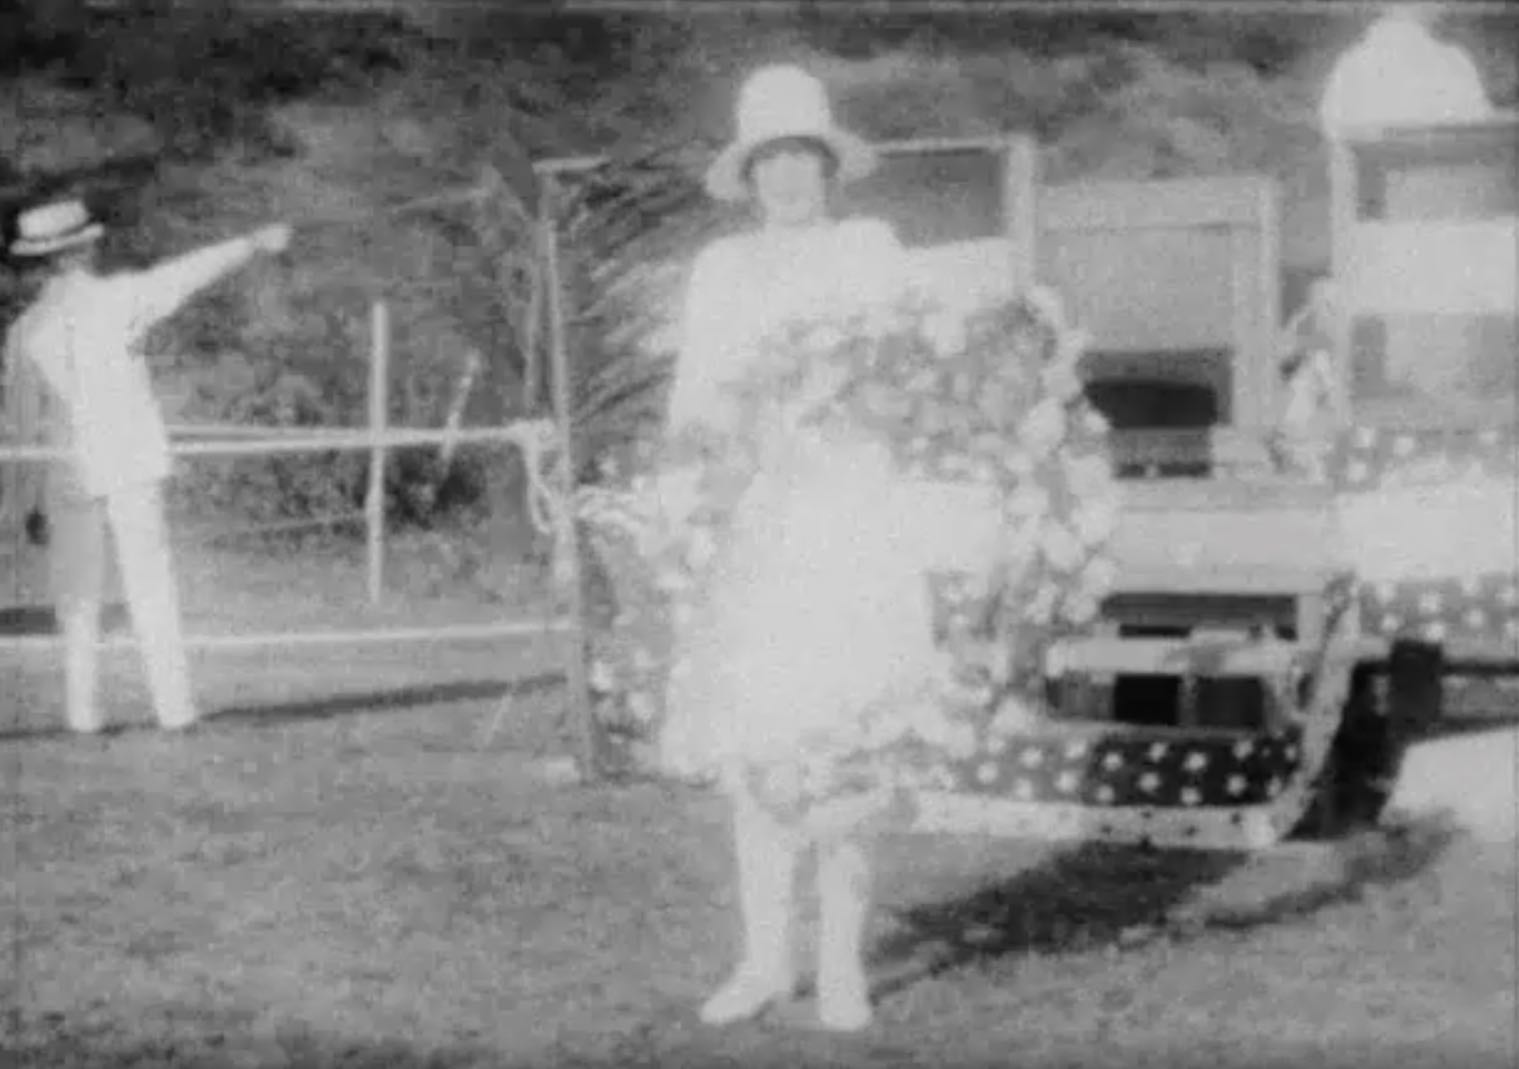 Charles Lindbergh's flower girl